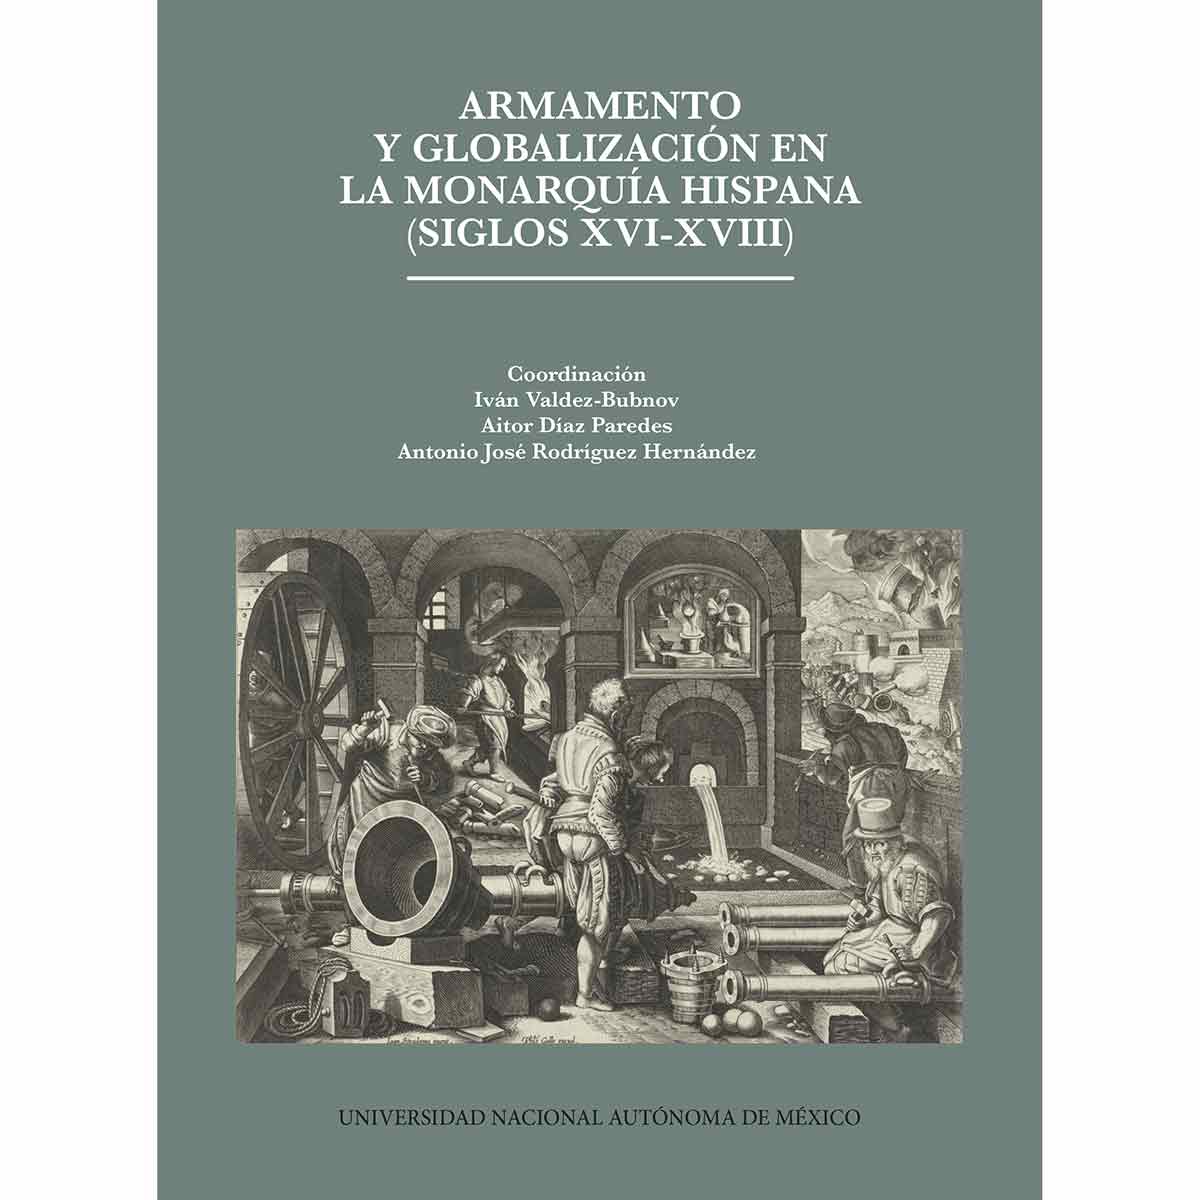 ARMAMENTO Y GLOBALIZACIÓN EN LA MONARQUÍA HISPANA, SIGLOS XVI-XVIII